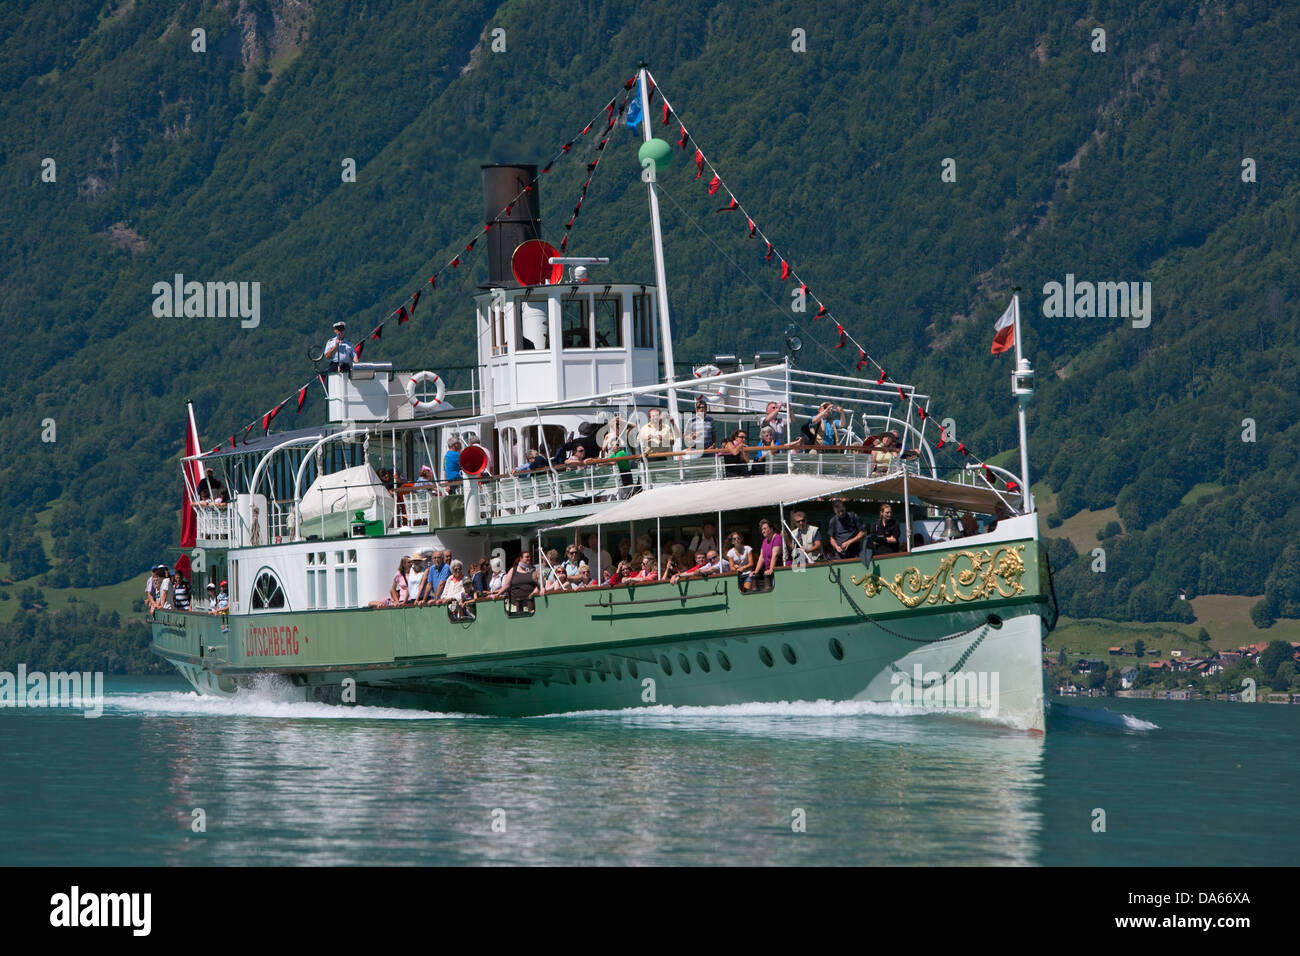 Steamboat, paddle steamer, Lötschberg, Brienzersee, barco, barcos, buques, embarcaciones, cantón de Berna, en el Oberland bernés en el lago de Brienz, Suiza Foto de stock